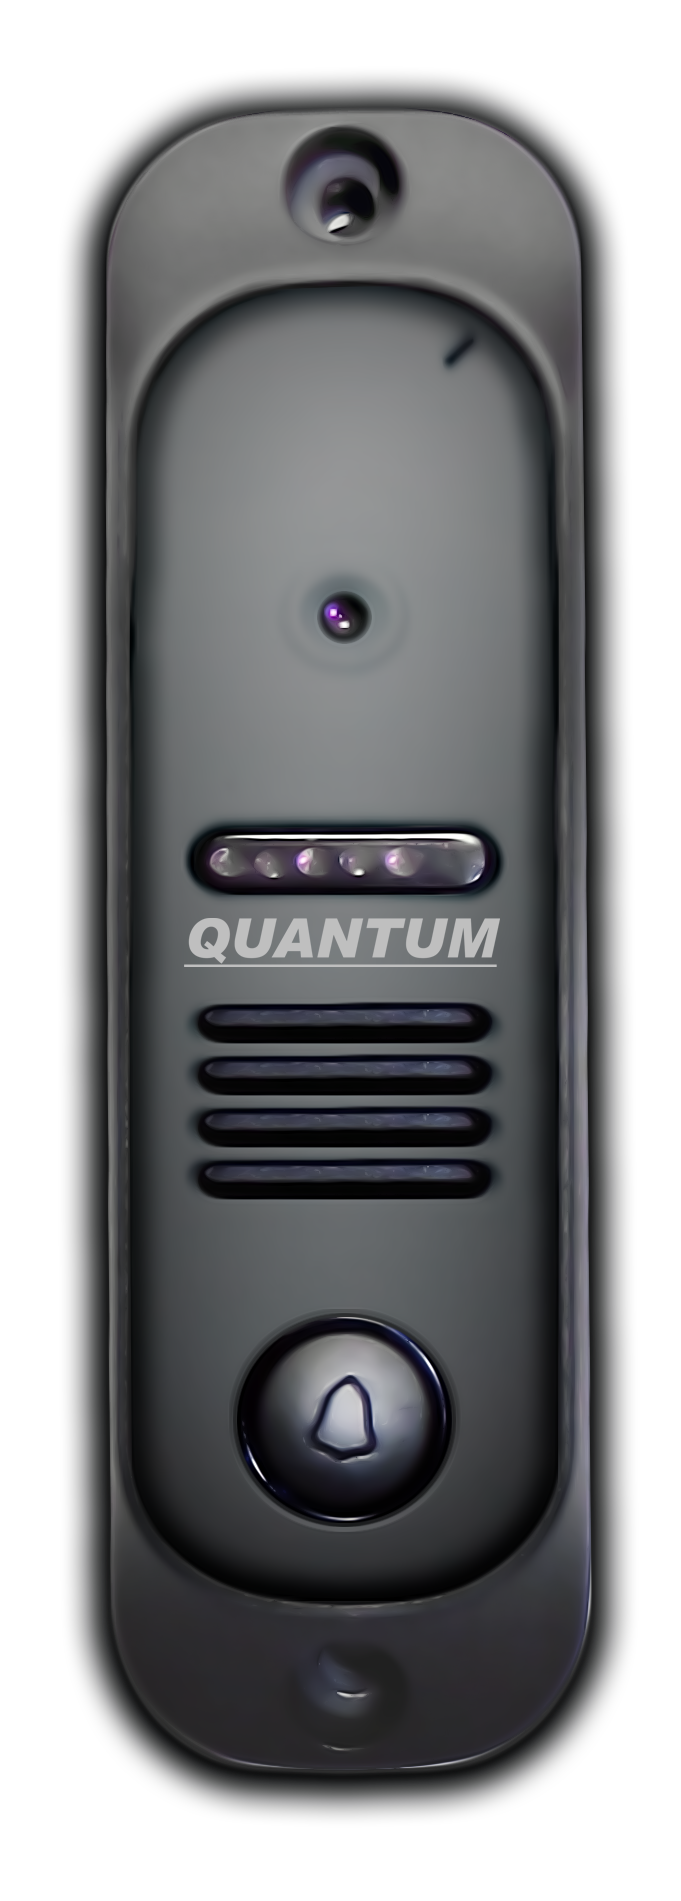 QM-307H (черный) - купить в интернет магазине с доставкой, цены, описание, характеристики, отзывы